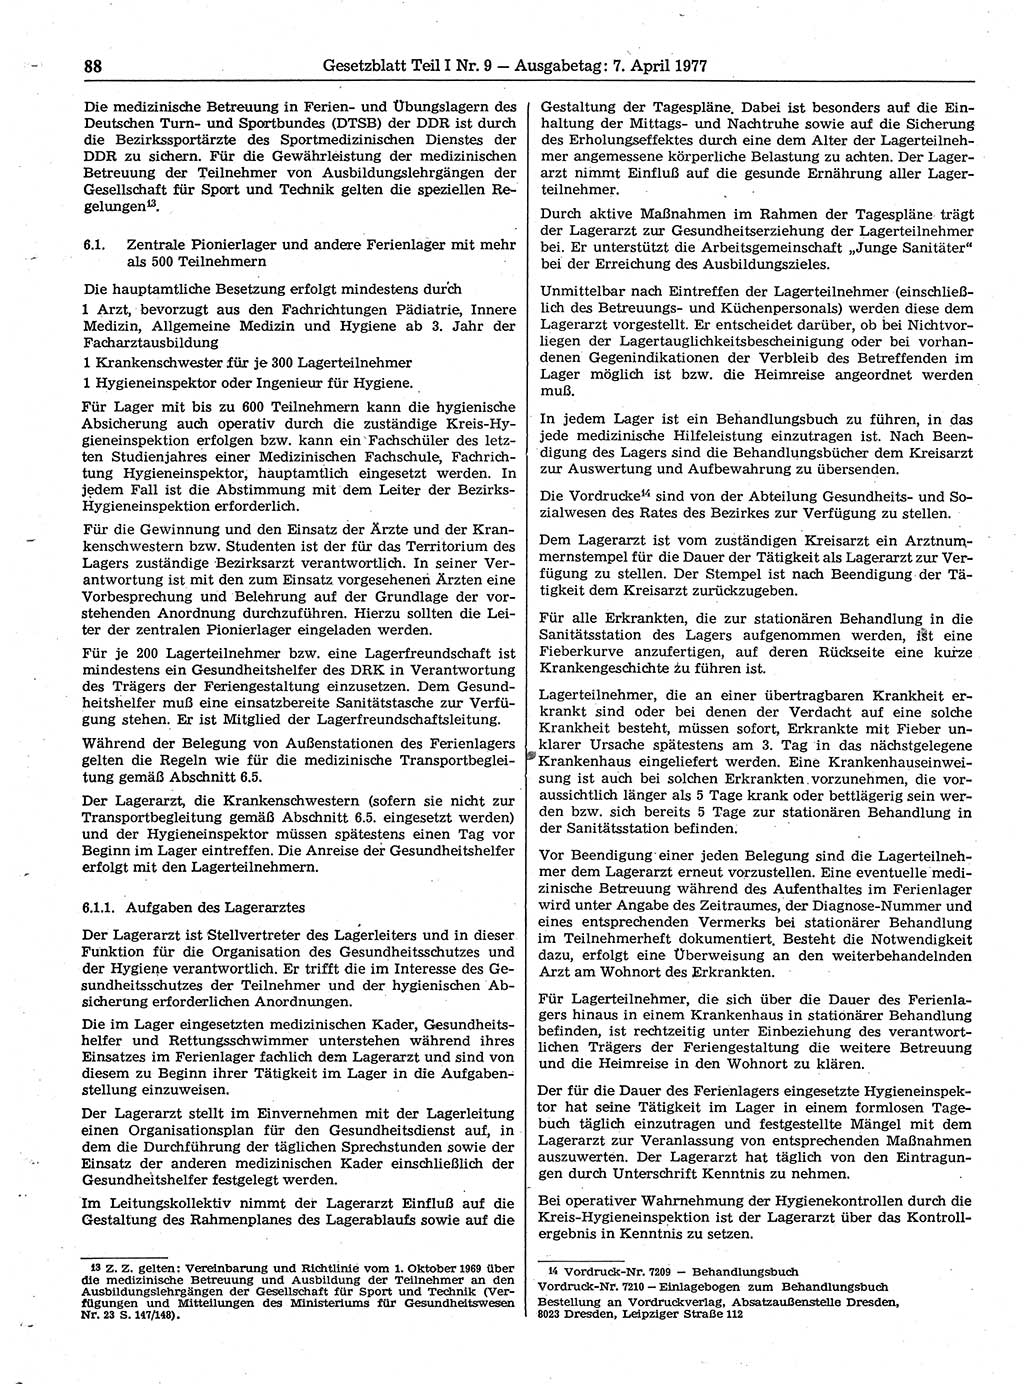 Gesetzblatt (GBl.) der Deutschen Demokratischen Republik (DDR) Teil Ⅰ 1977, Seite 88 (GBl. DDR Ⅰ 1977, S. 88)